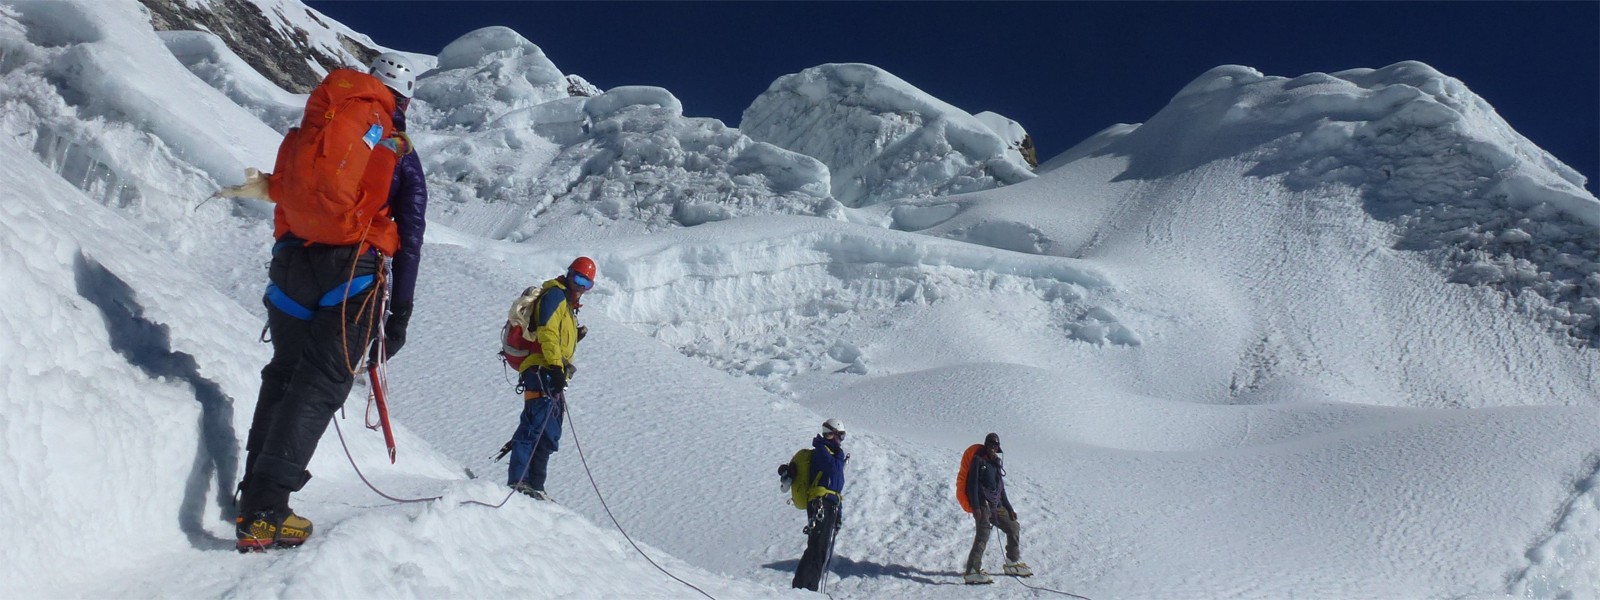 Island Peak Expedition Nepal